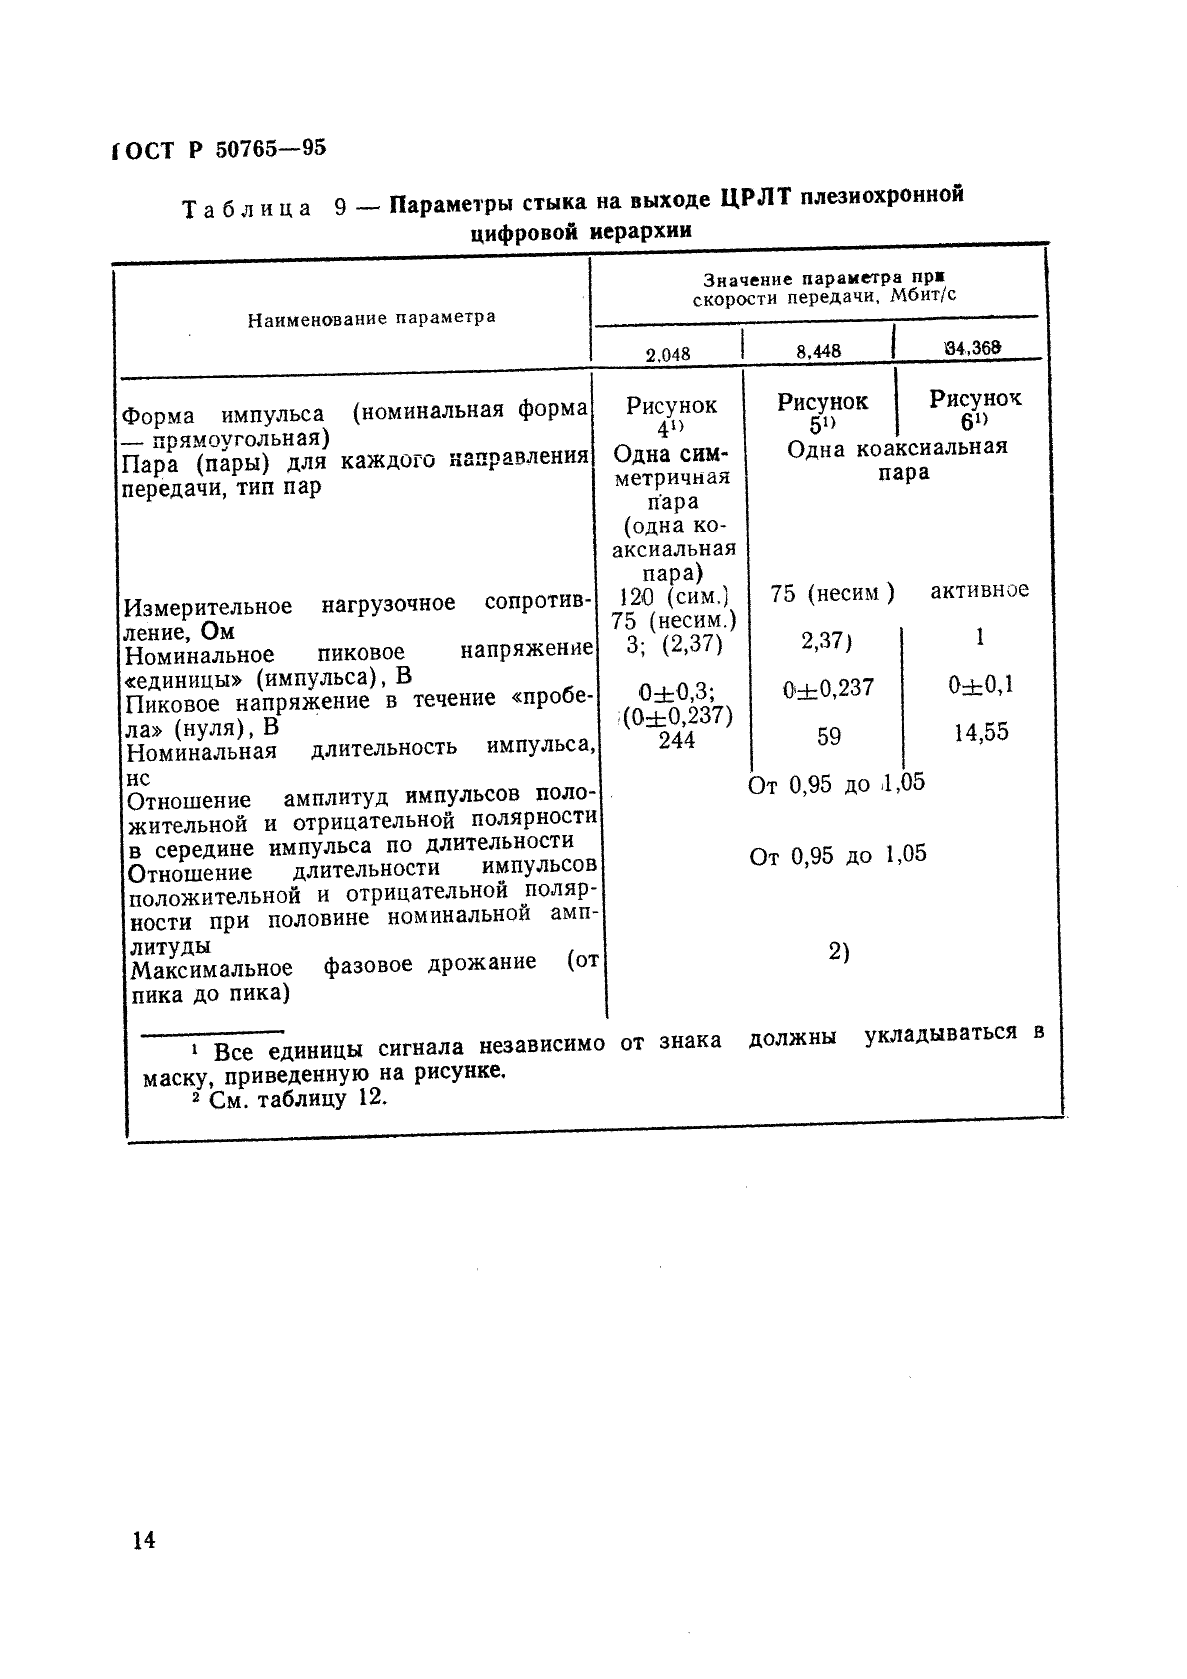 ГОСТ Р 50765-95 Аппаратура радиорелейная. Классификация. Основные параметры цепей стыка (фото 17 из 62)